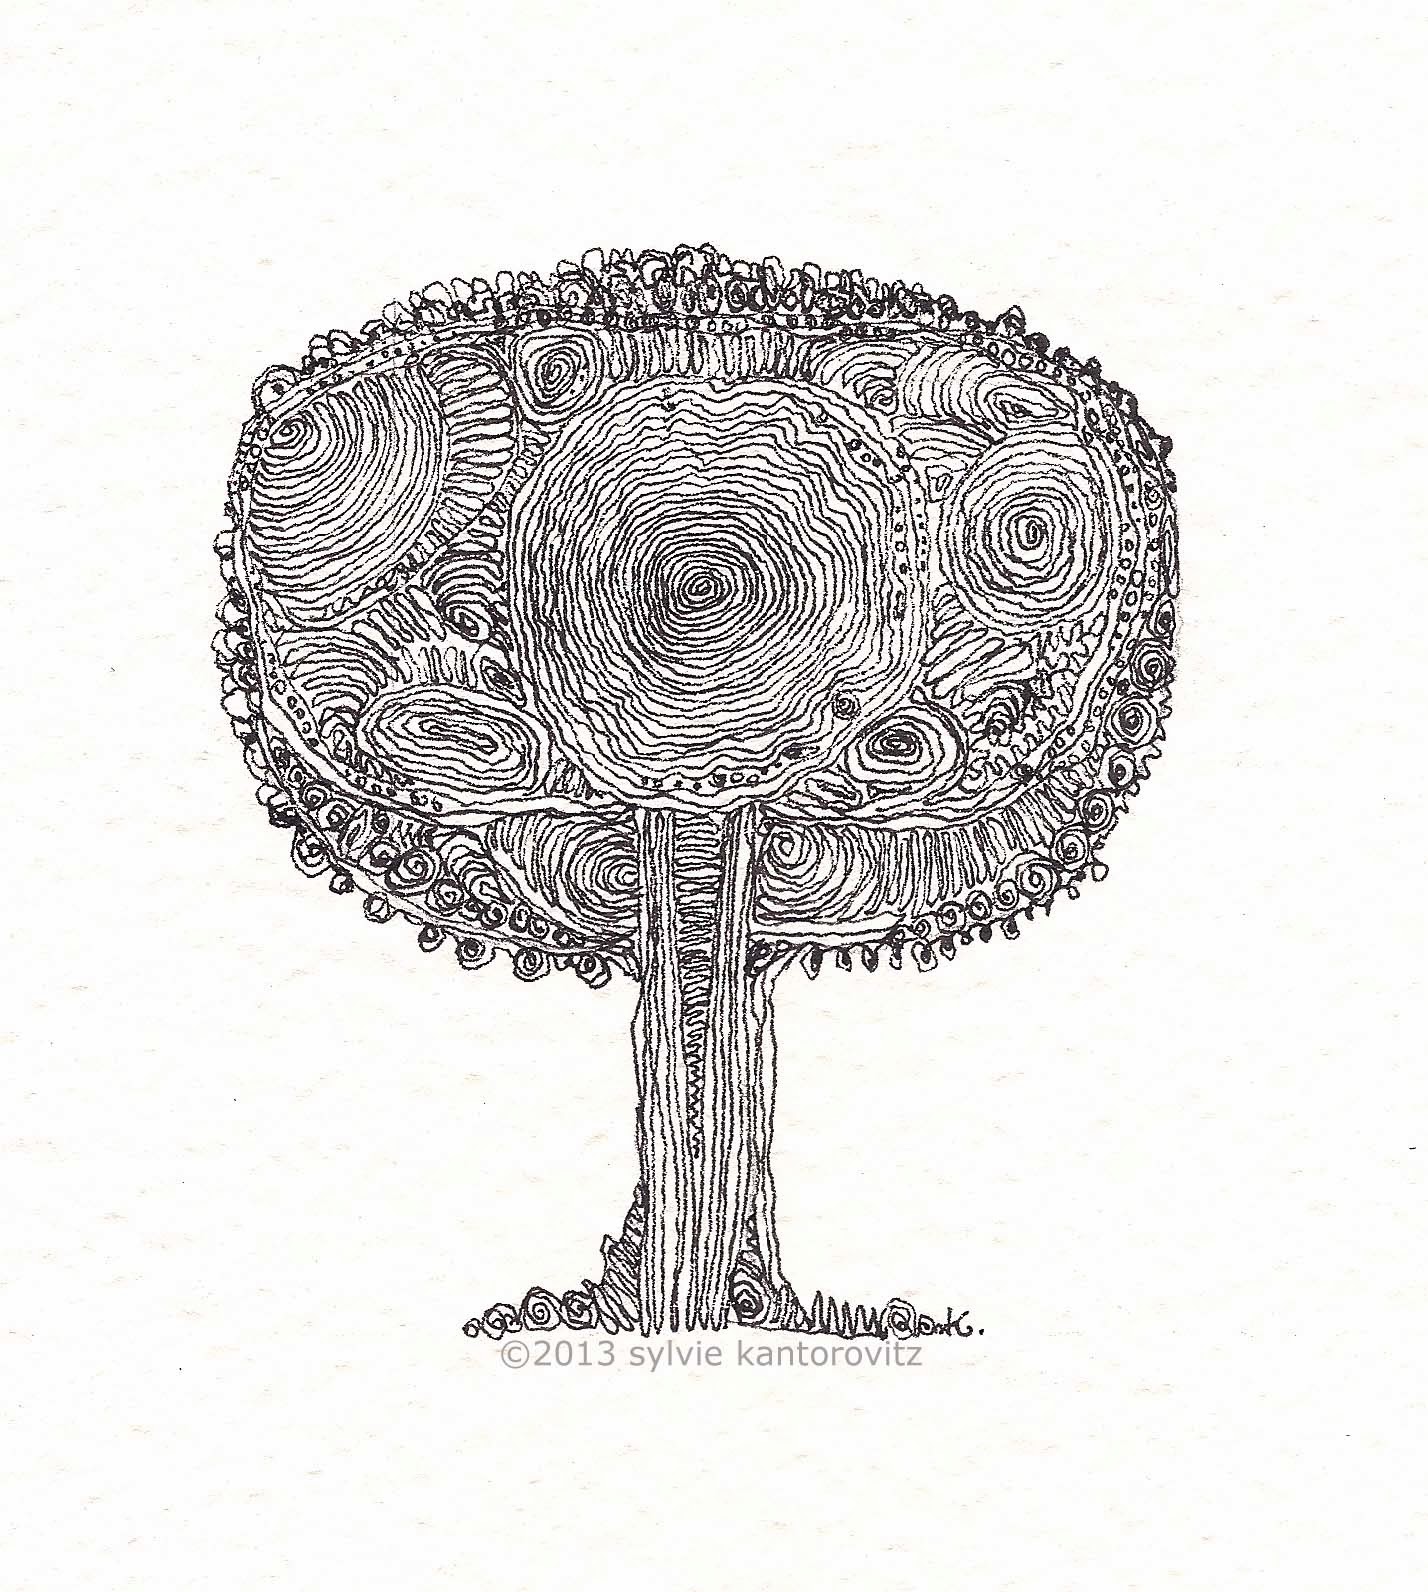 Dan S Blog Pine Tree Sketchbook Doodle